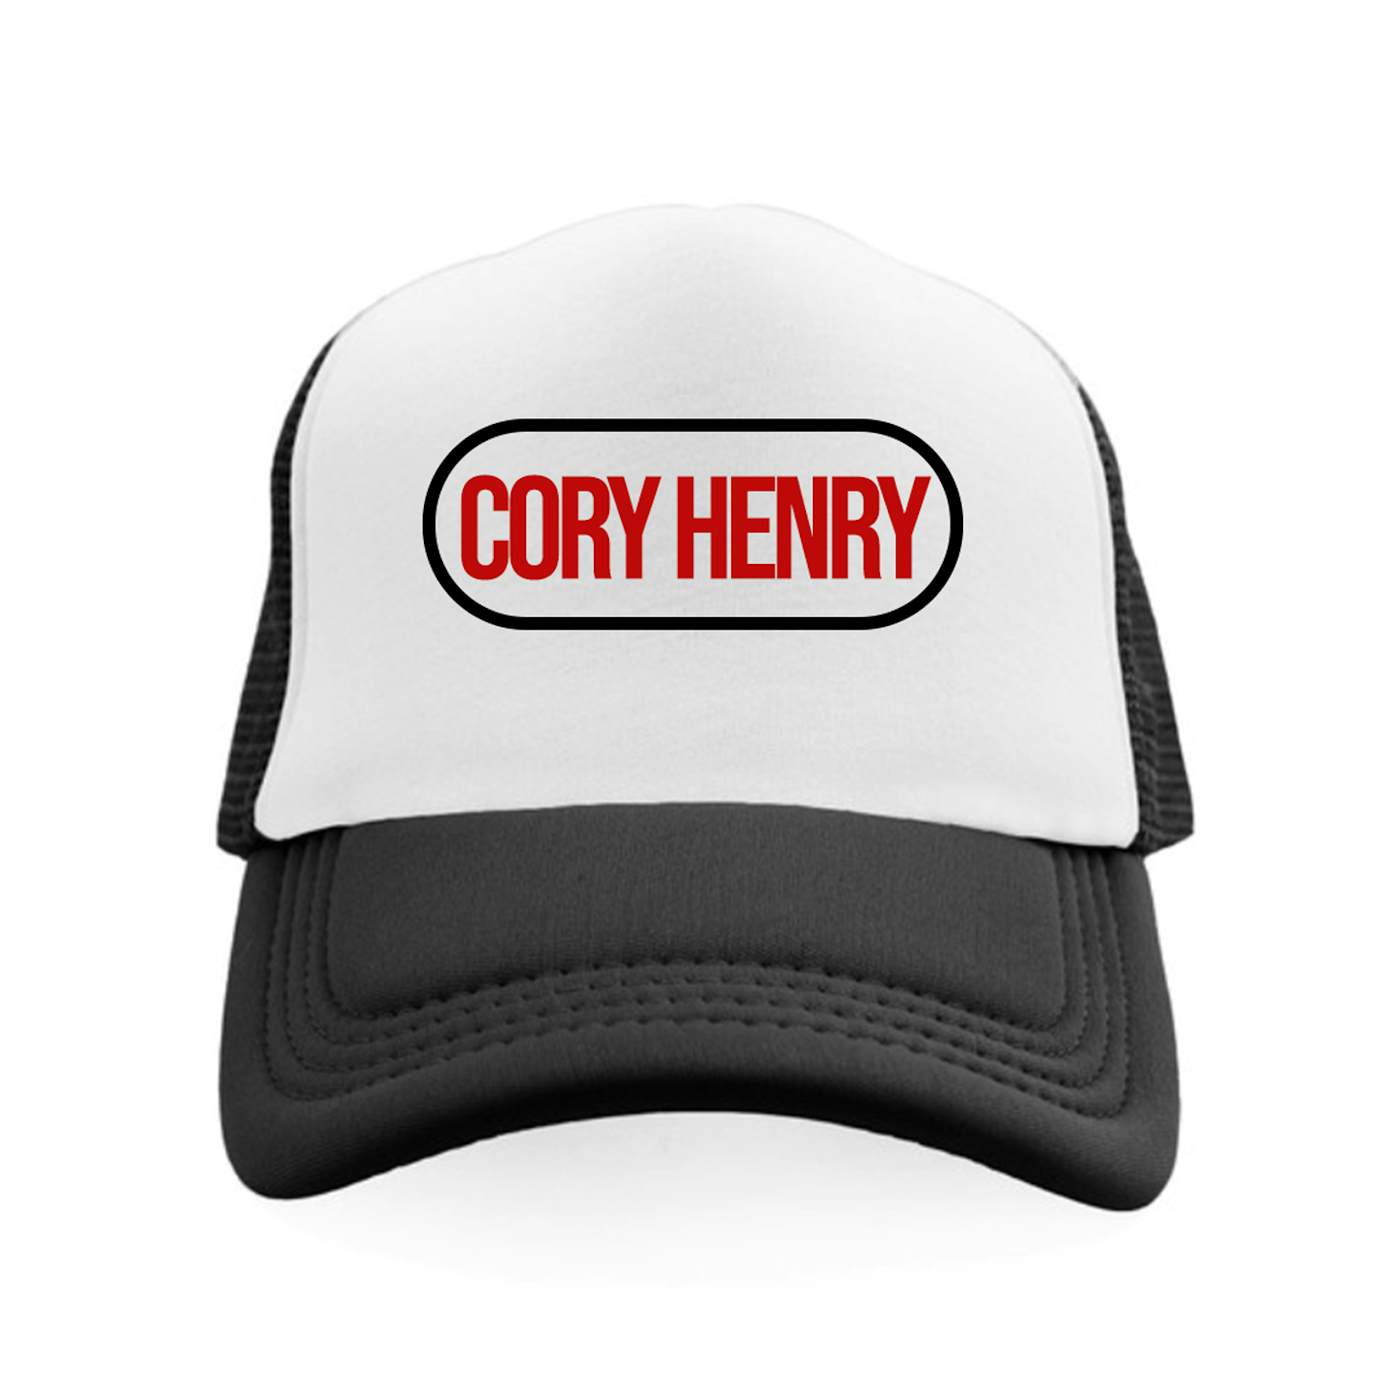 Cory Henry Trucker Hat